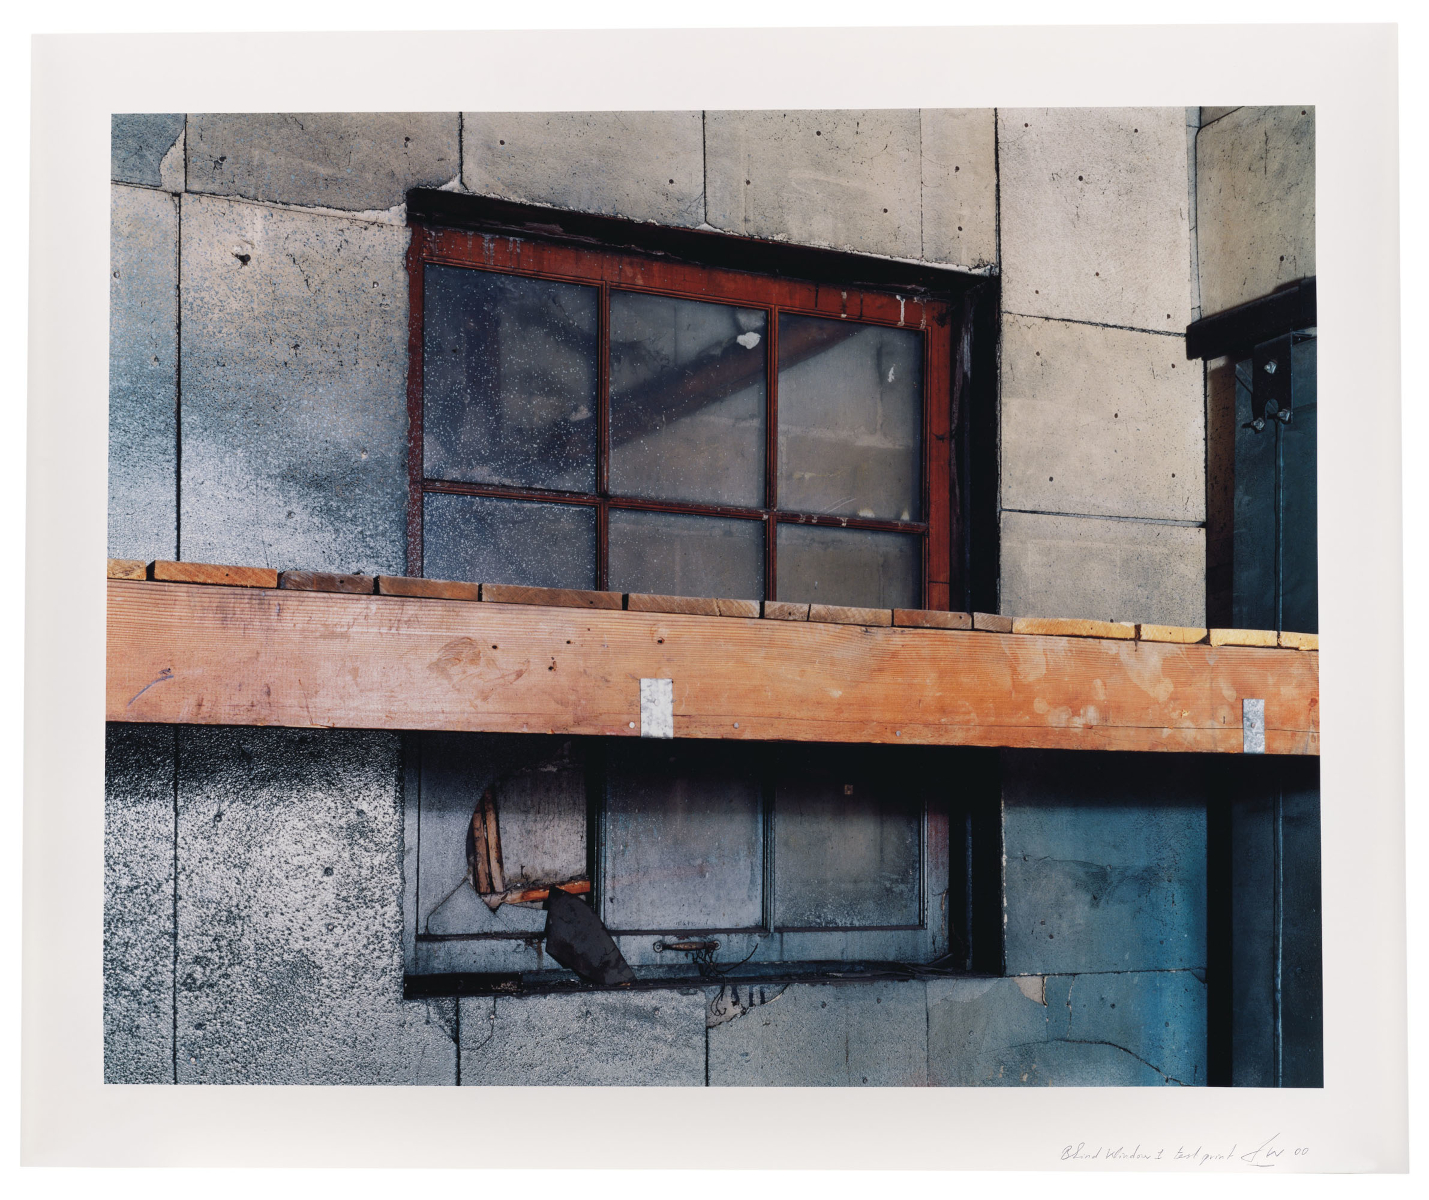 Jeff Wall, Blind Window no. 1, 2000